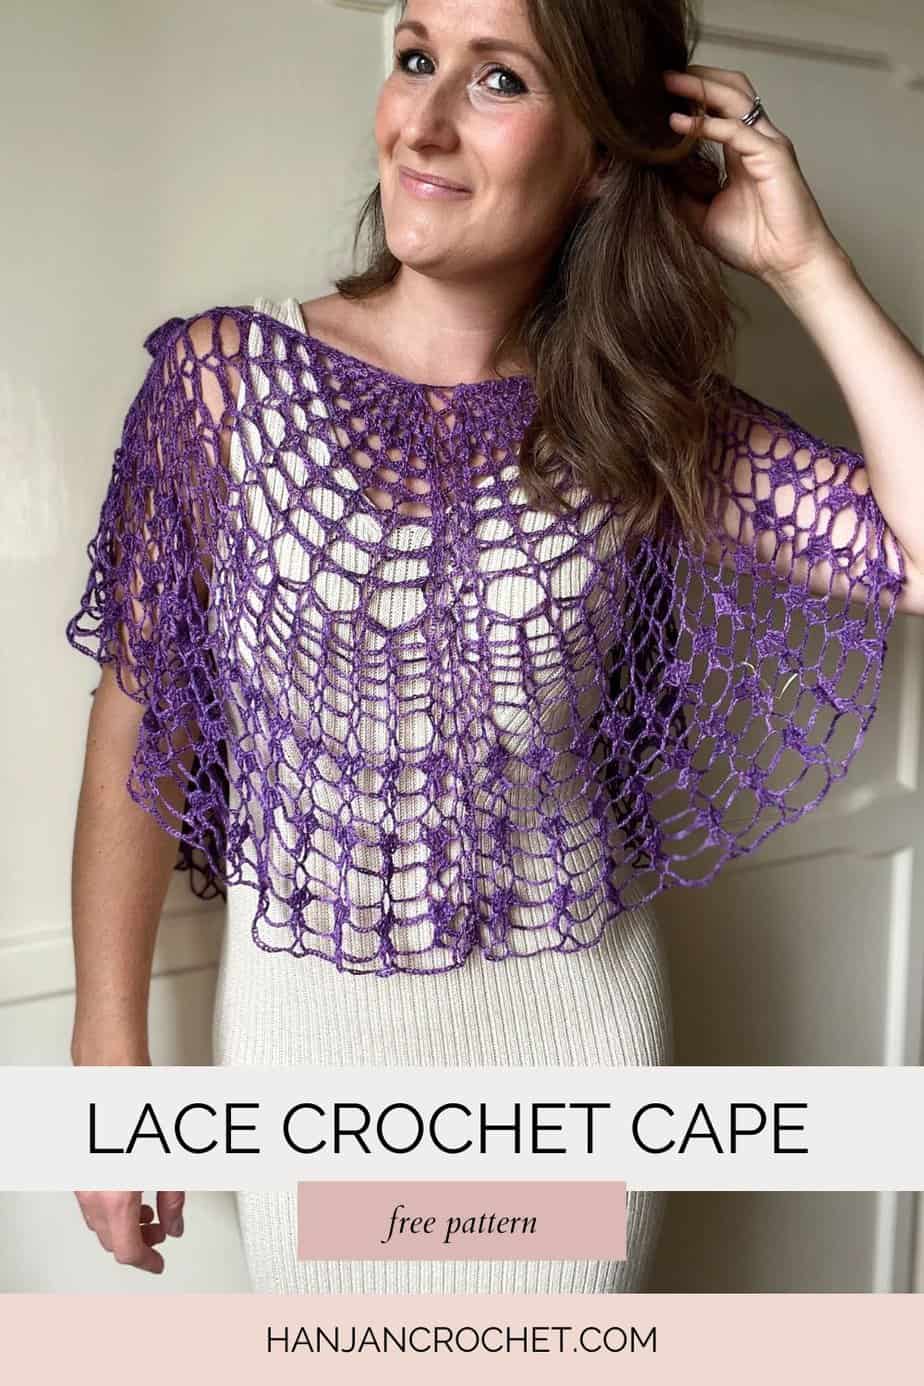 Woman wearing purple lace crochet summer top pattern